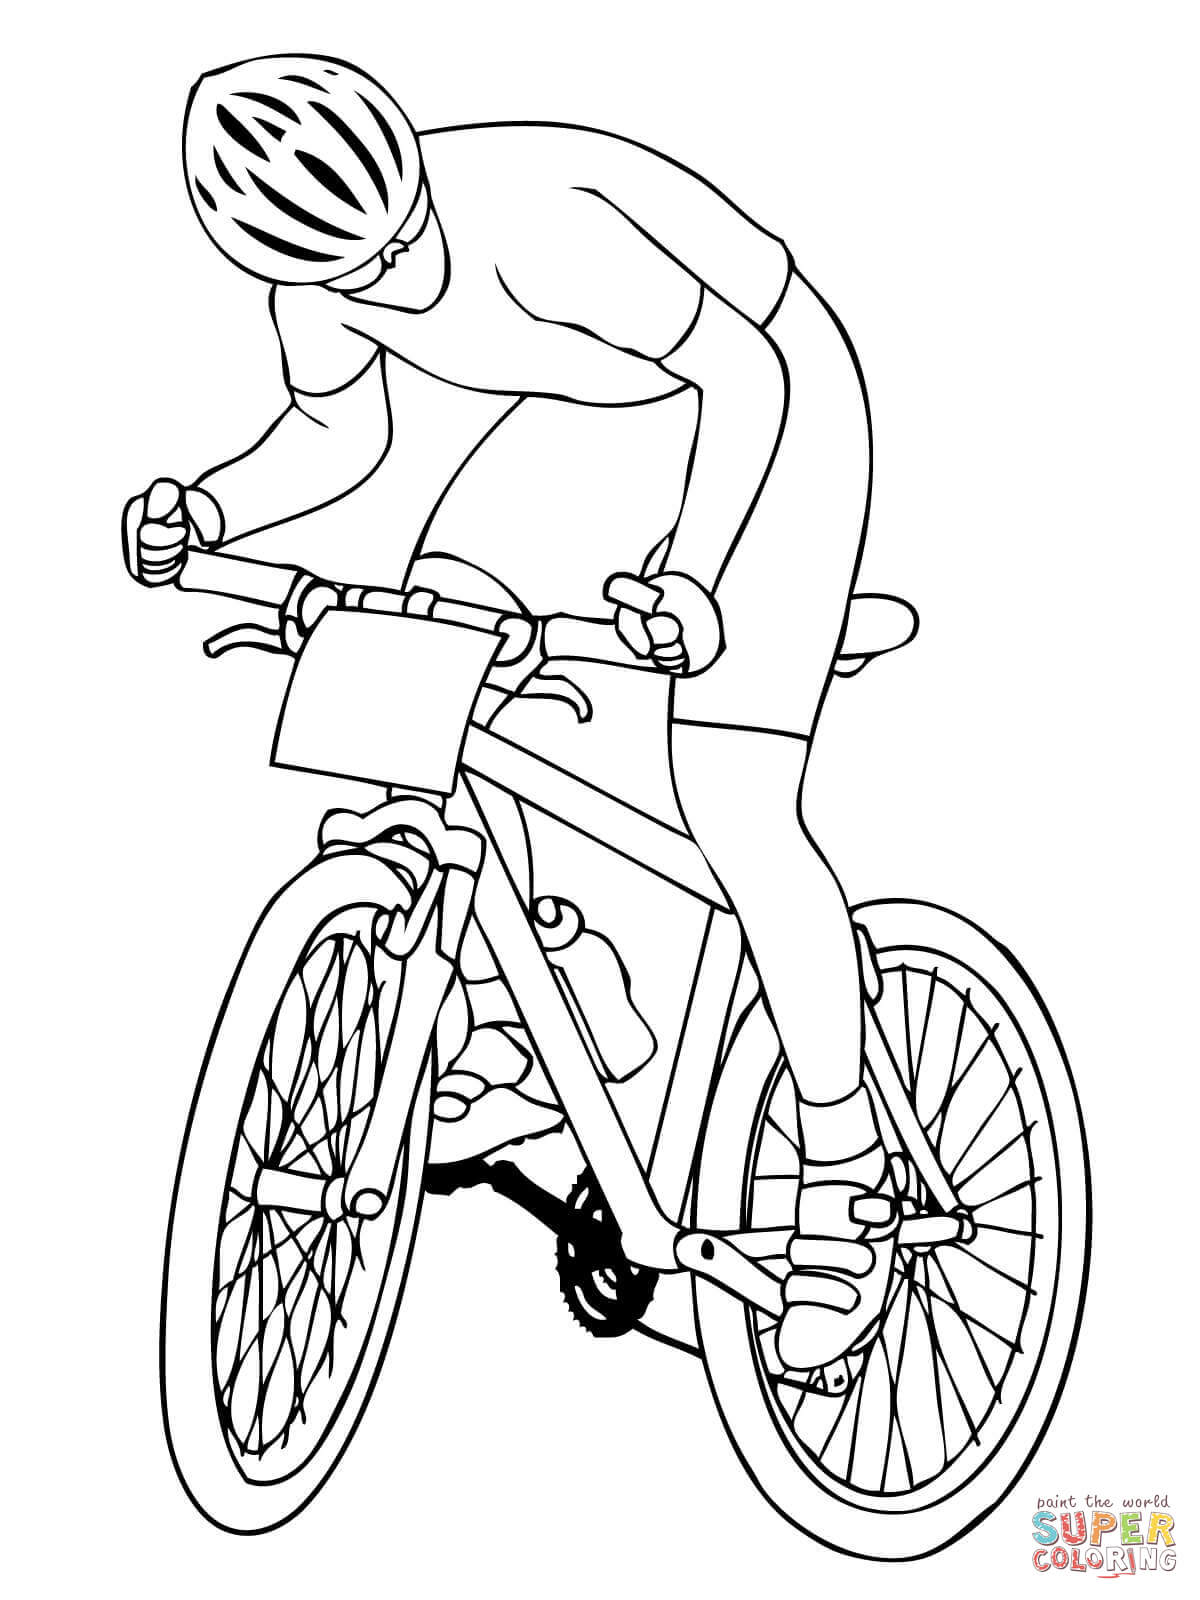 Раскраски для детей с велосипедистами. Детские раскраски велоспорт. Раскраски для детей скачать бесплатно. Бесплатные раскраски. Раскраски про спорт скачать бесплатно.